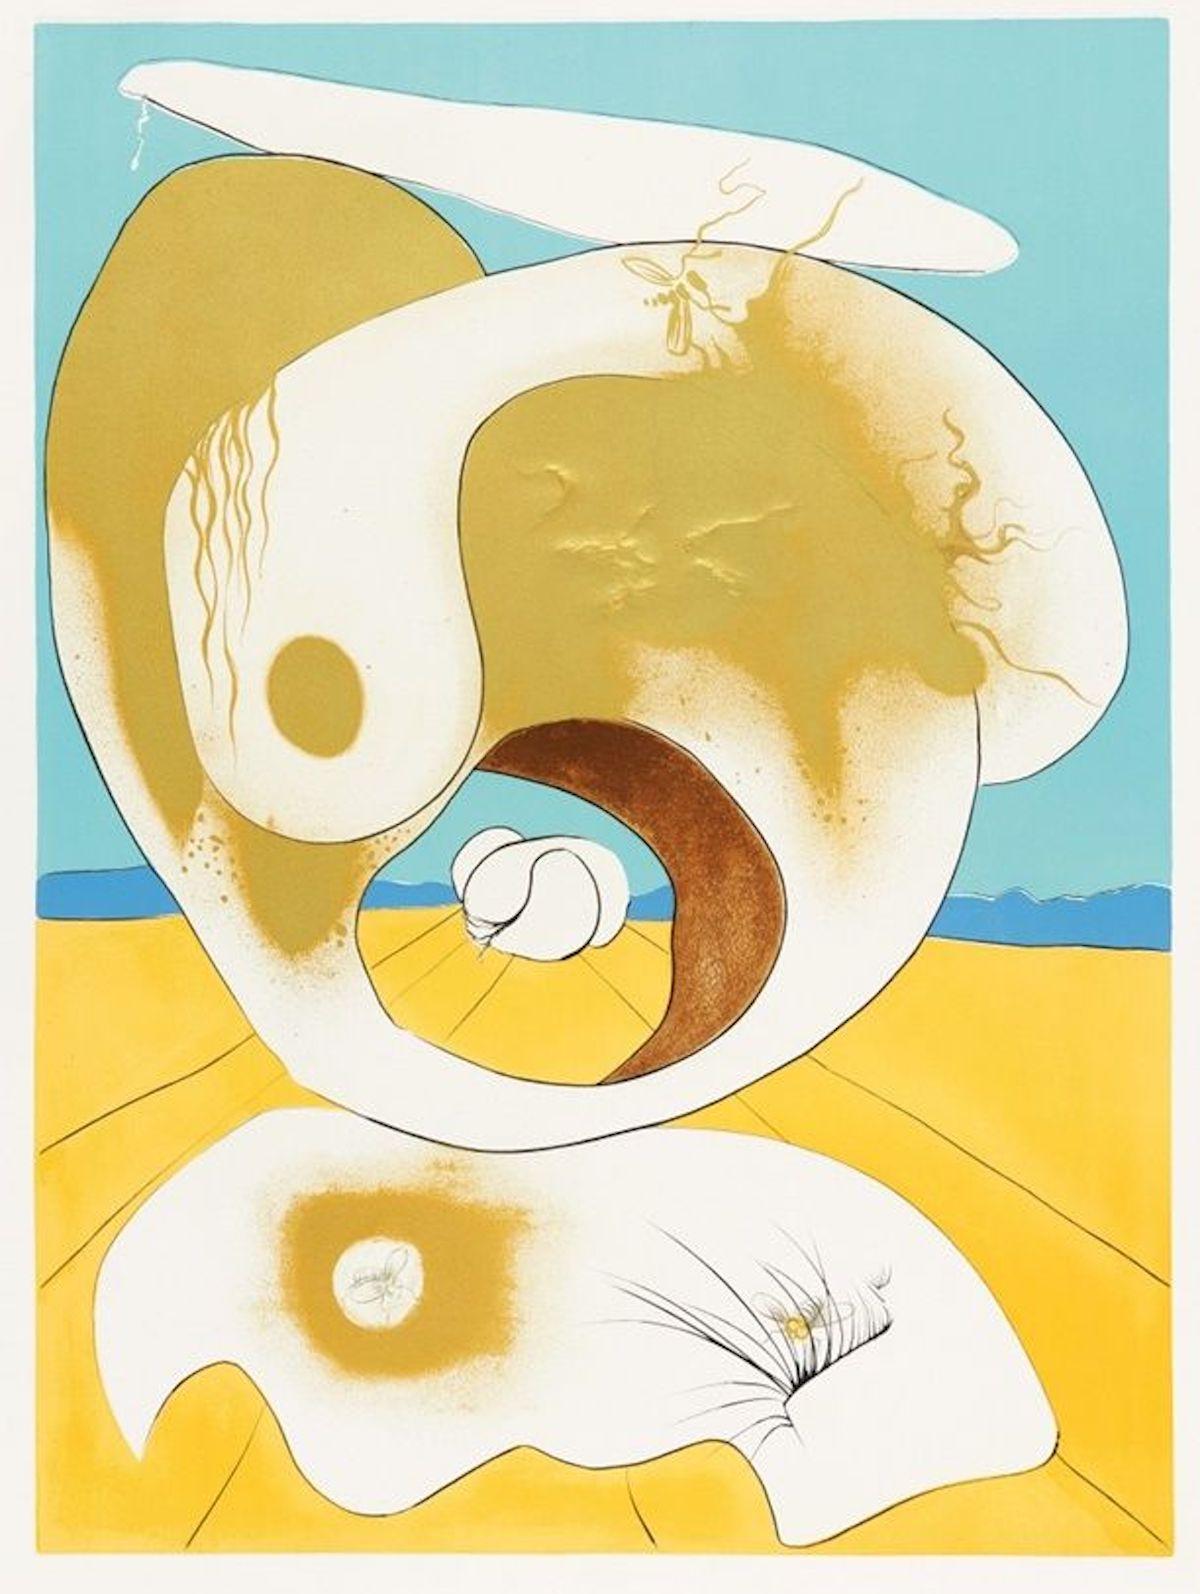 Vision Planetaire et Scatologique - from La Conquête du Cosmos - S. Dalì - 1974 - Print by Salvador Dalí